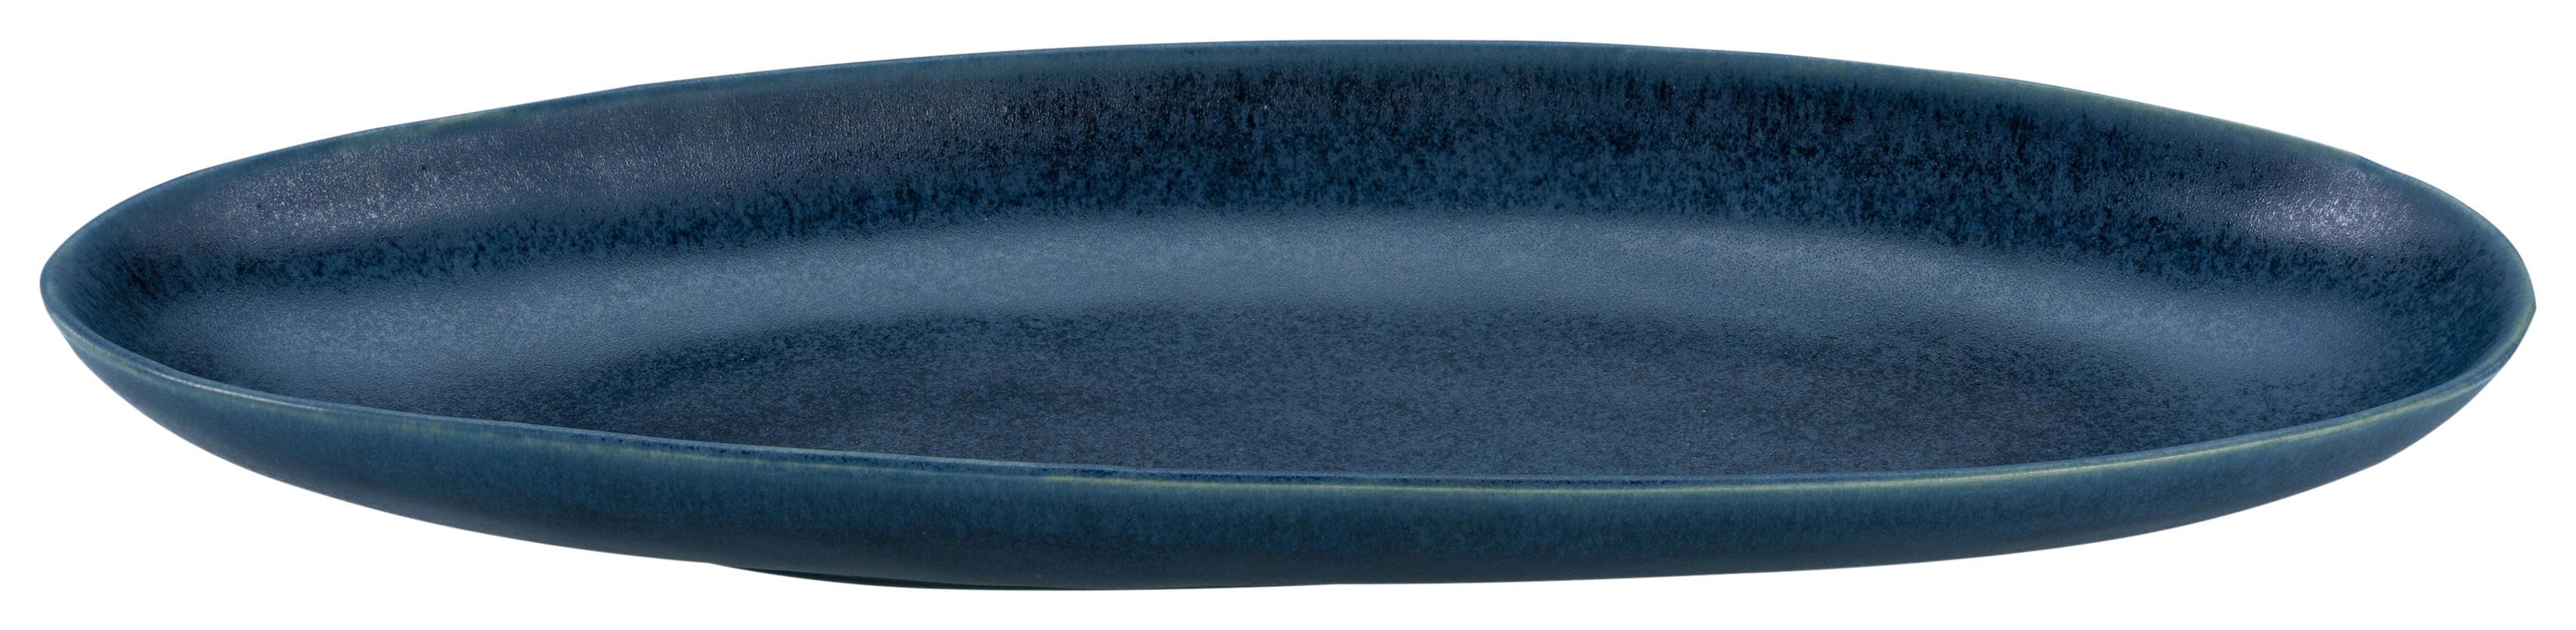 Servírovací Podnos Gourmet-M, Ø: 35cm - modrá, Moderní, keramika (35,5/15/3,5cm) - Premium Living